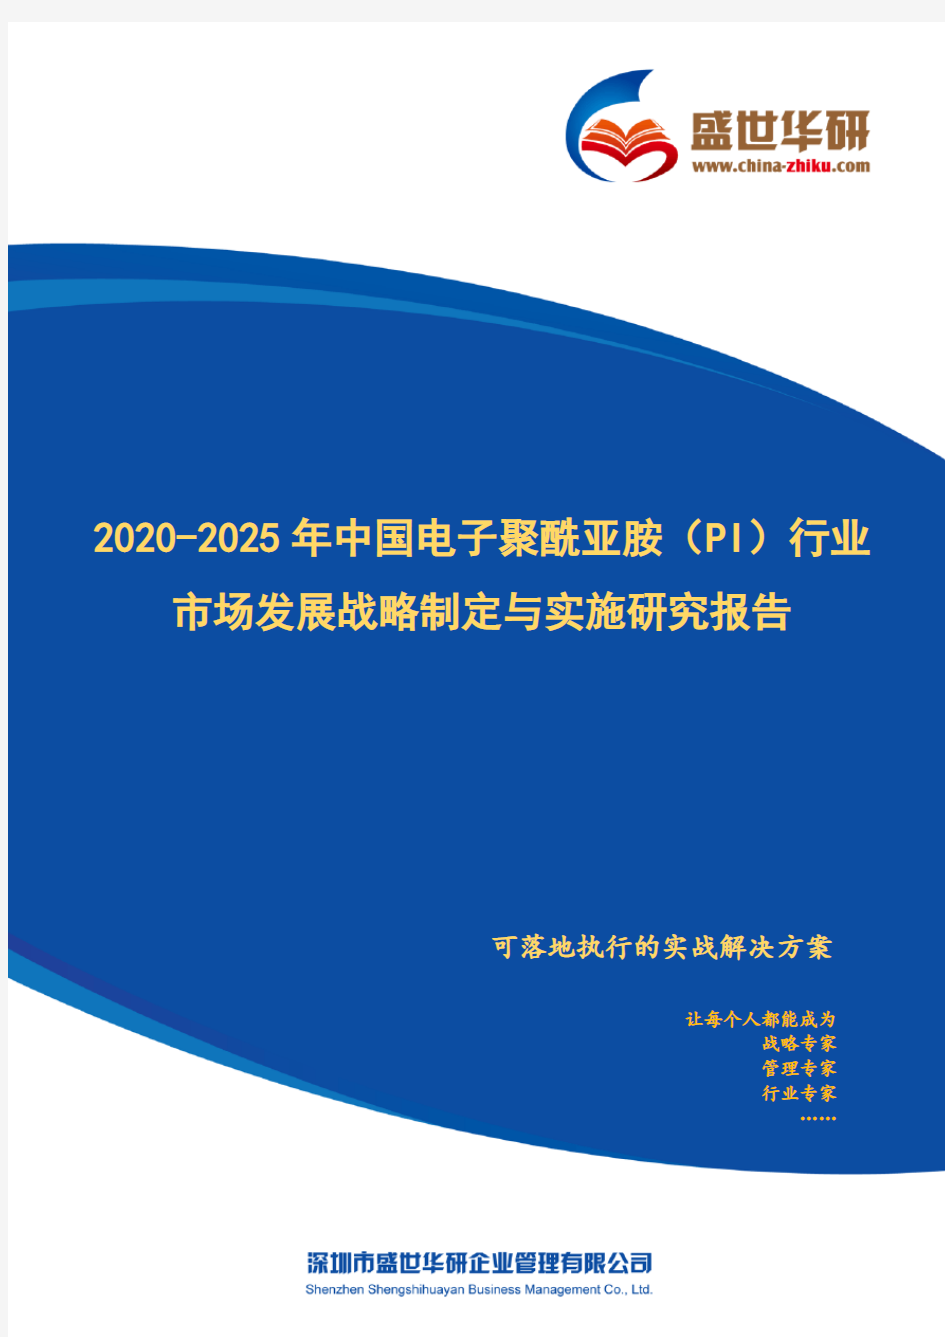 【完整版】2020-2025年中国电子聚酰亚胺(PI)行业市场发展战略制定与实施研究报告